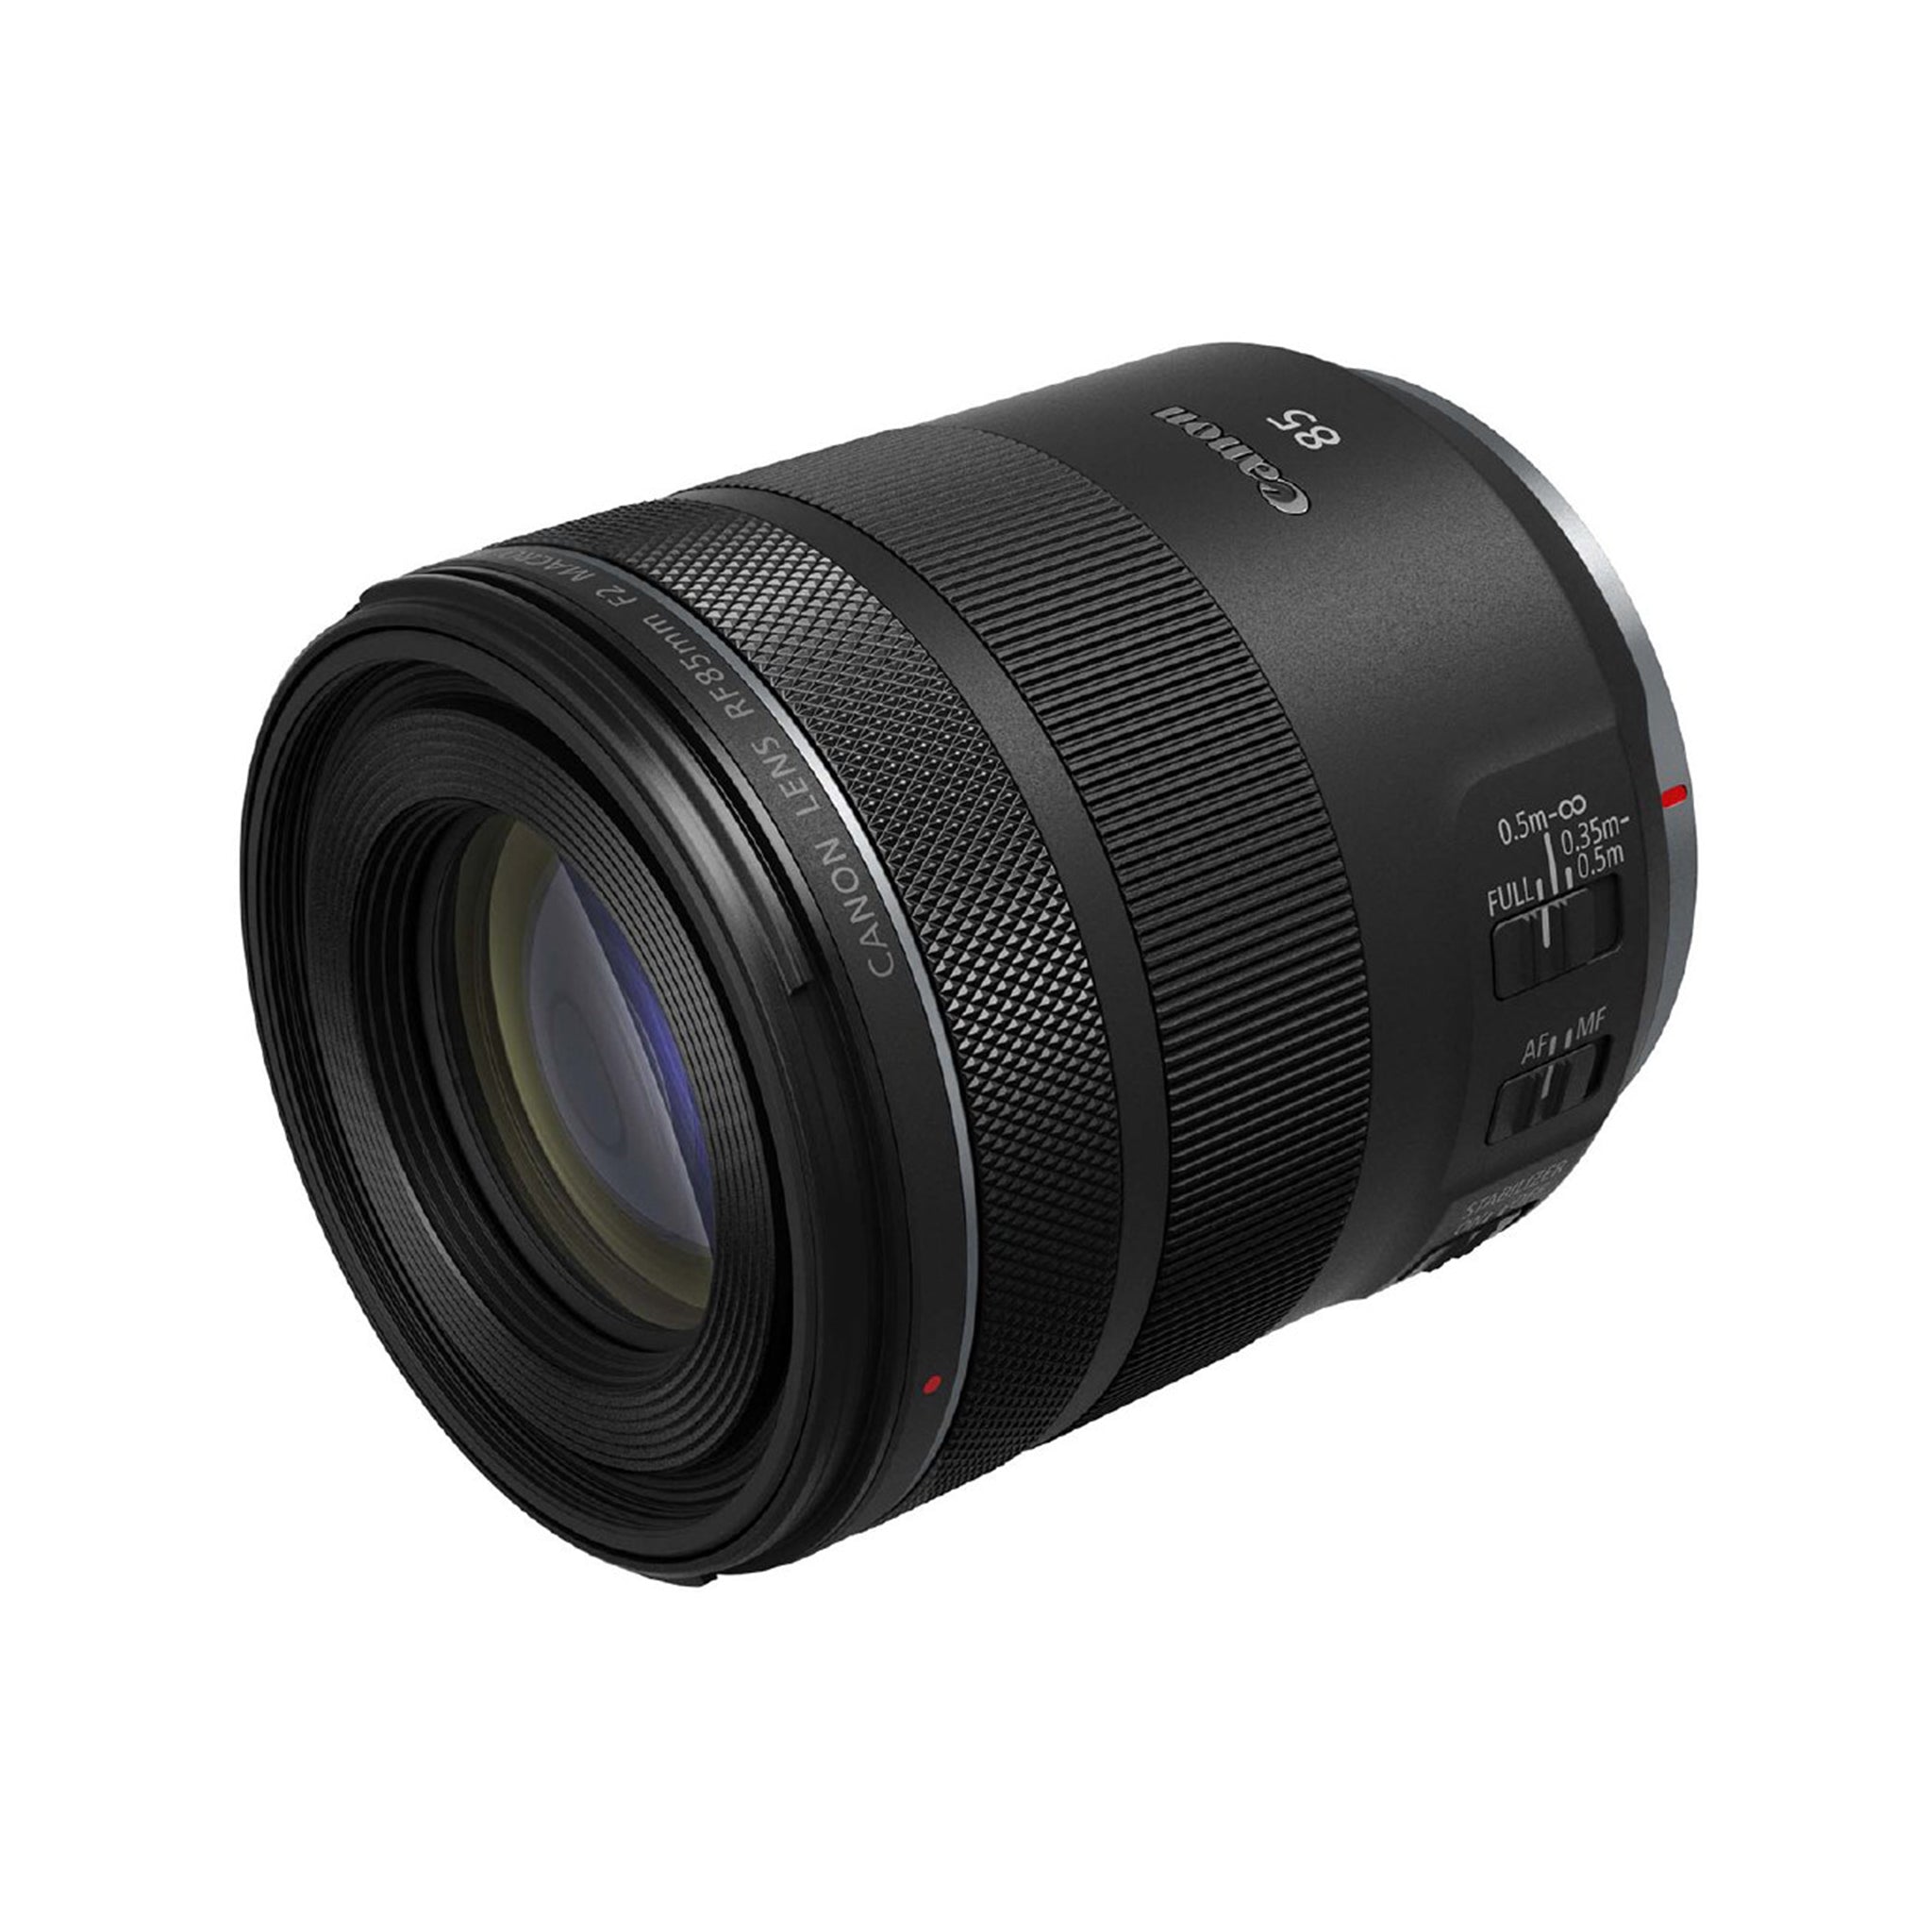 Canon RF 85mm F2 Macro IS STM Lens